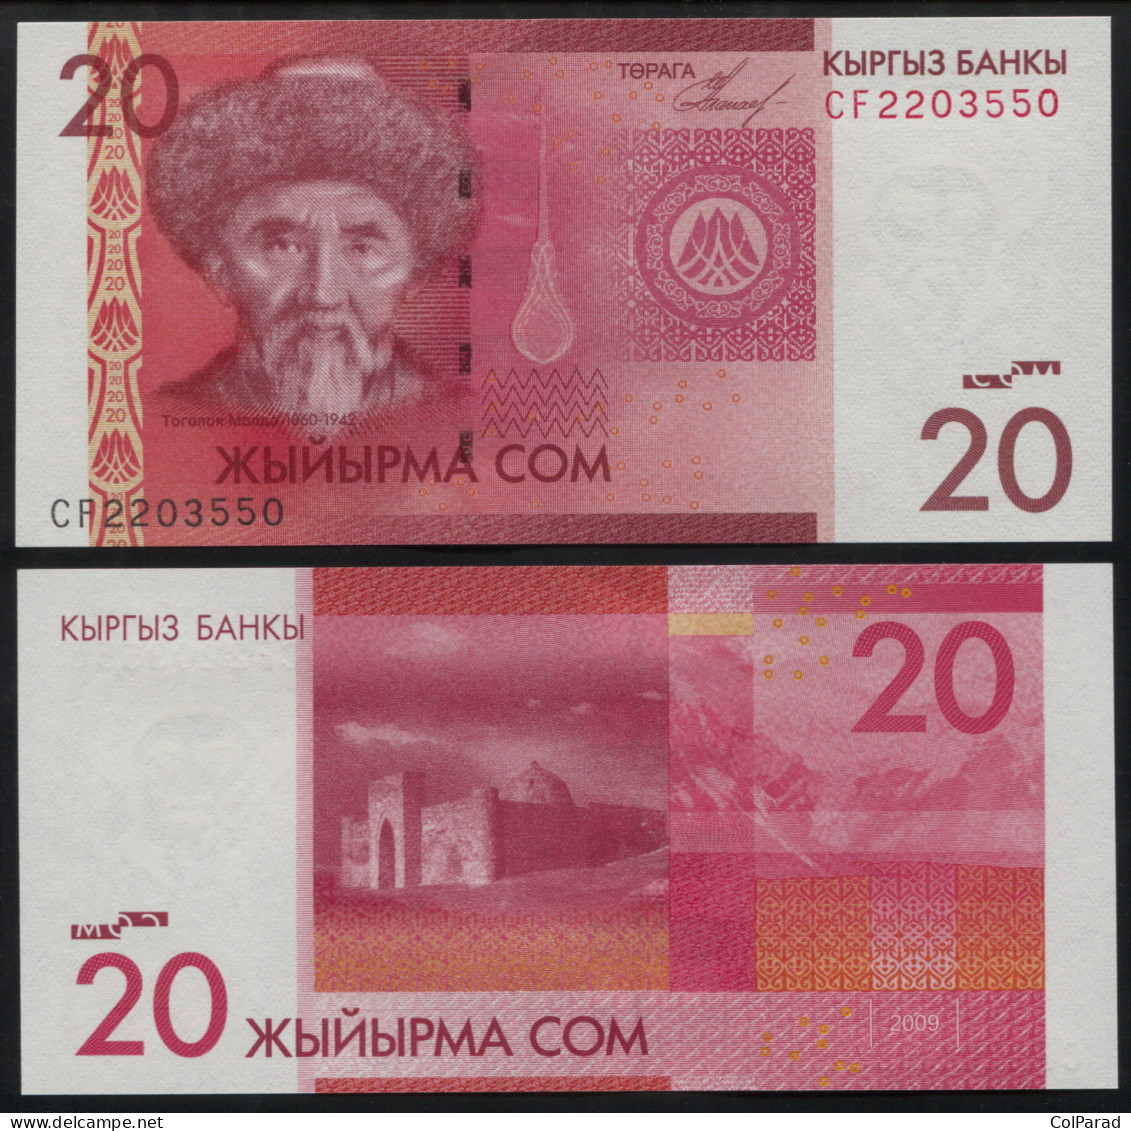 KYRGYZSTAN 20 SOM - 2009 - Unc - P.24a Paper Banknote - Kirgisistan